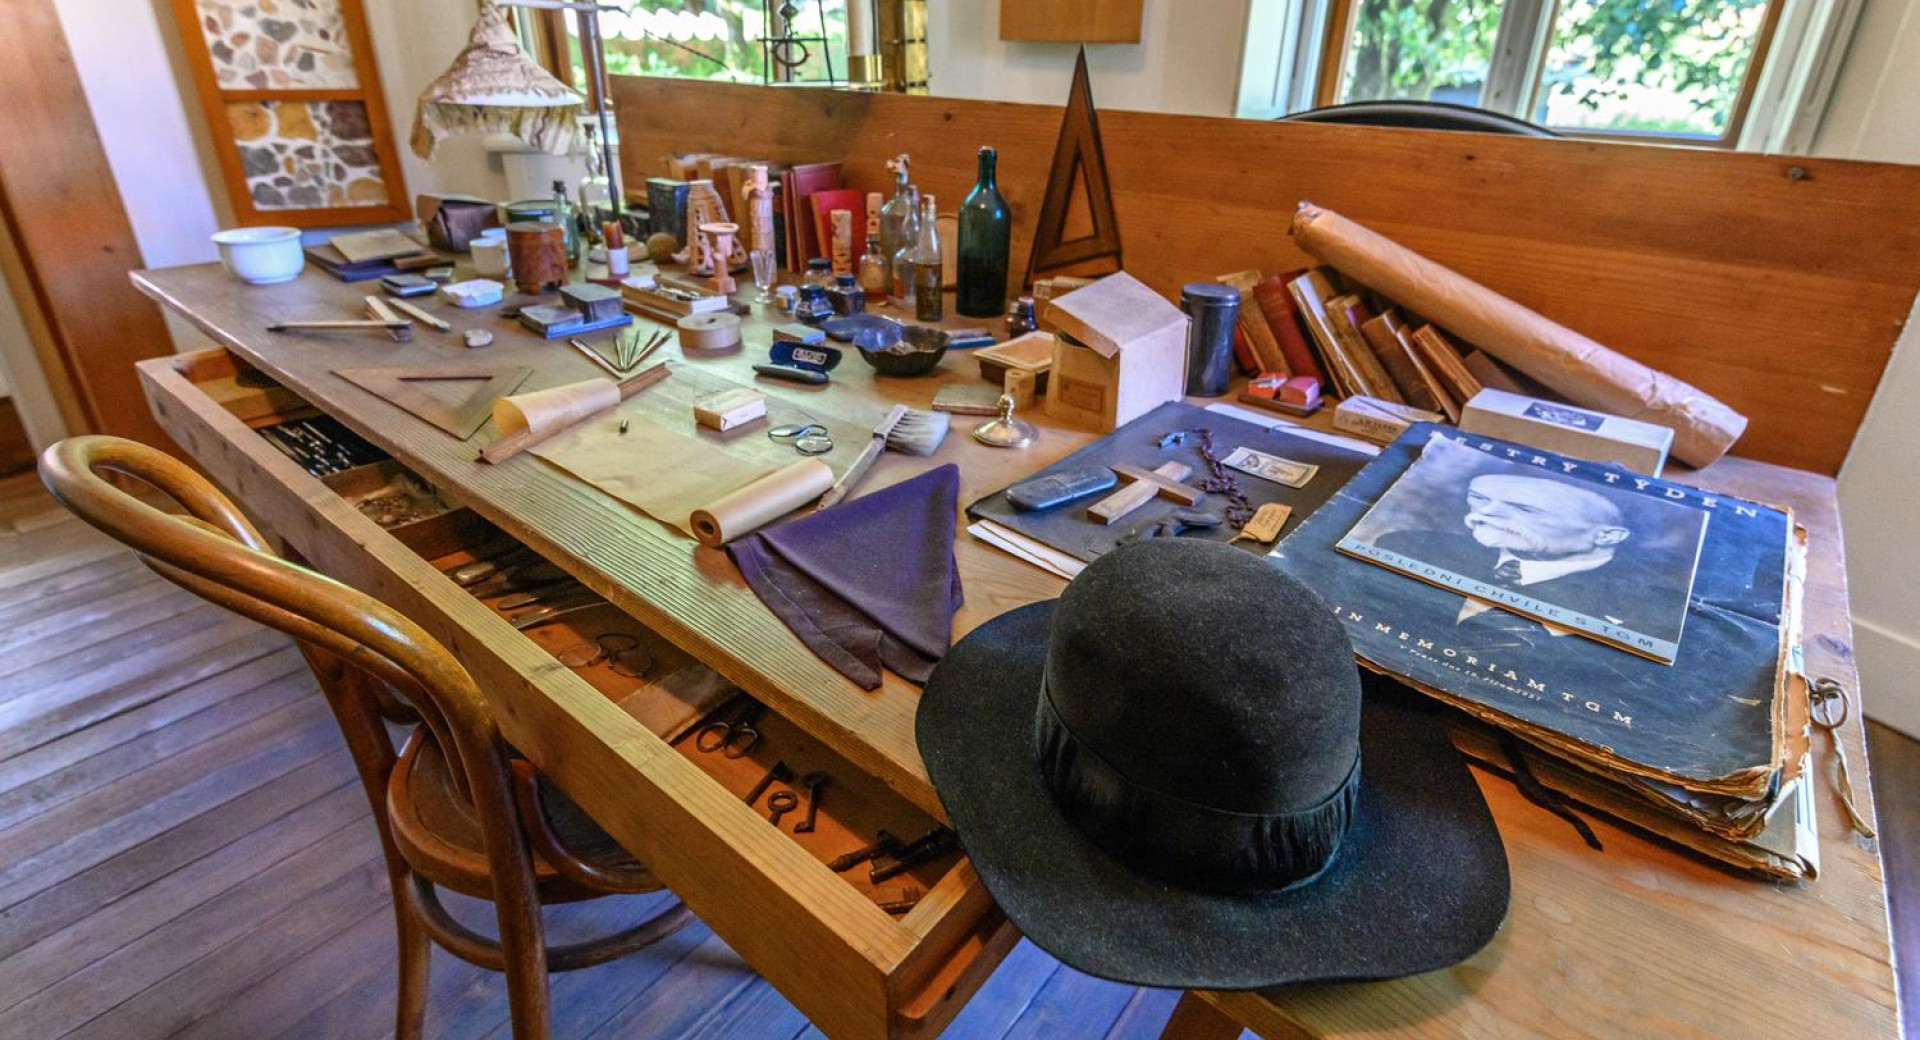 Razstavljeni izdelki na leseni mizi v Plečnikovi hiši.